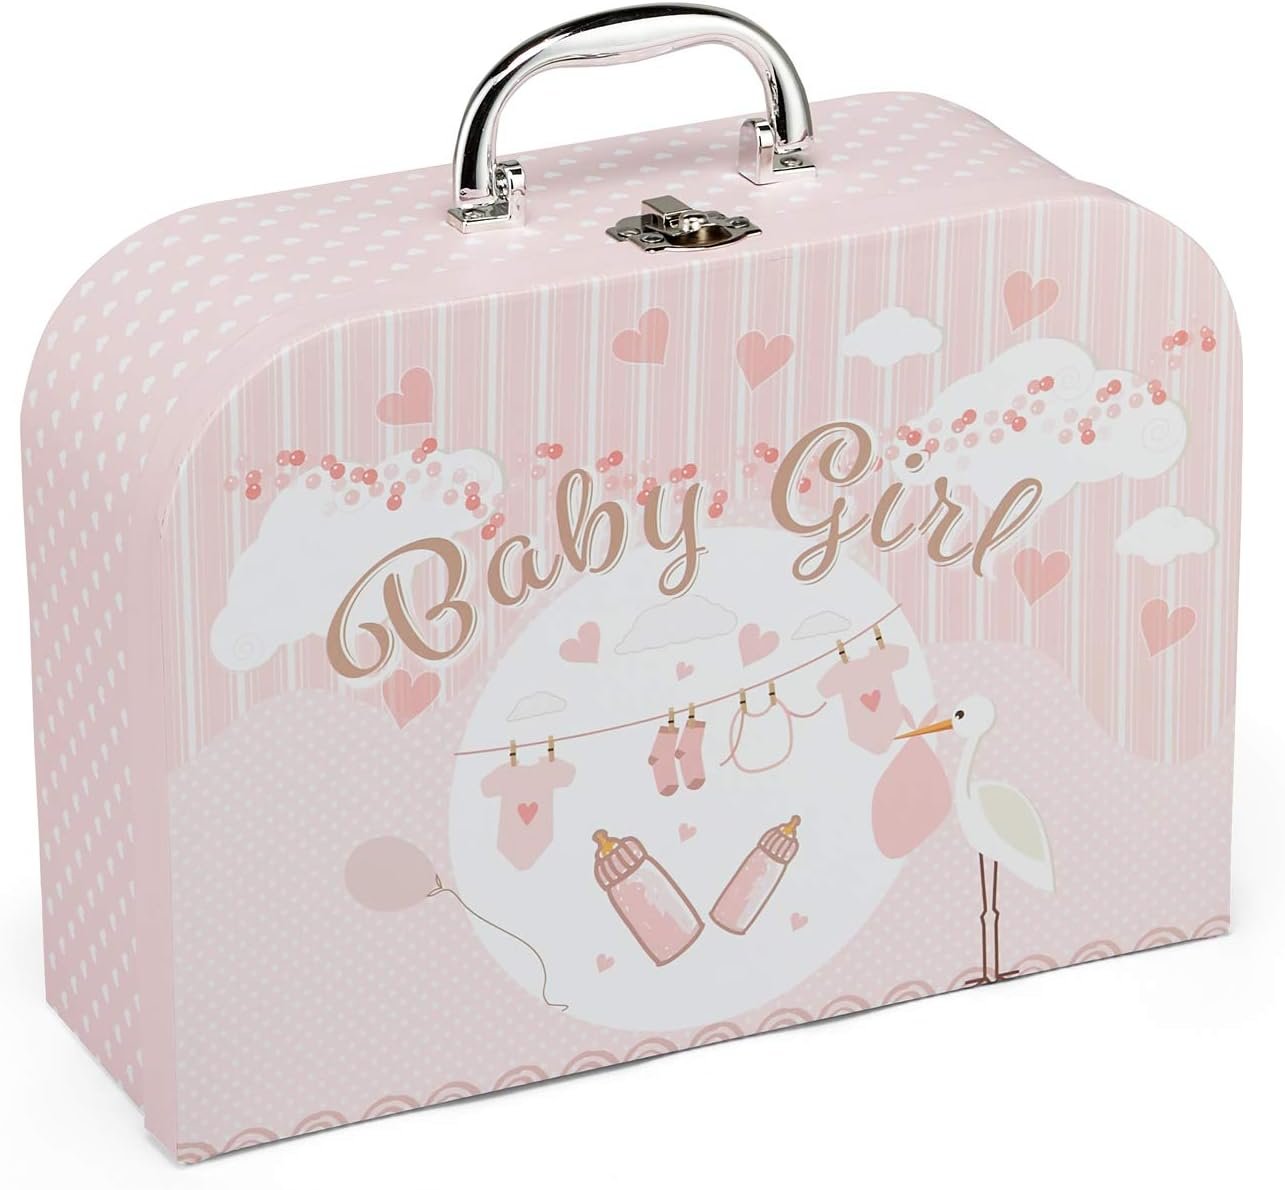 Baby Box Shop Baby Girl Gift Set - Baby Girl Newborn Essentials, Baby Gift Set, Baby Gifts Keepsake Box, Gifts for Baby, Baby Essentials, New Born Baby Girls Gift, Gifts for Baby Girl - (Pink,Small)